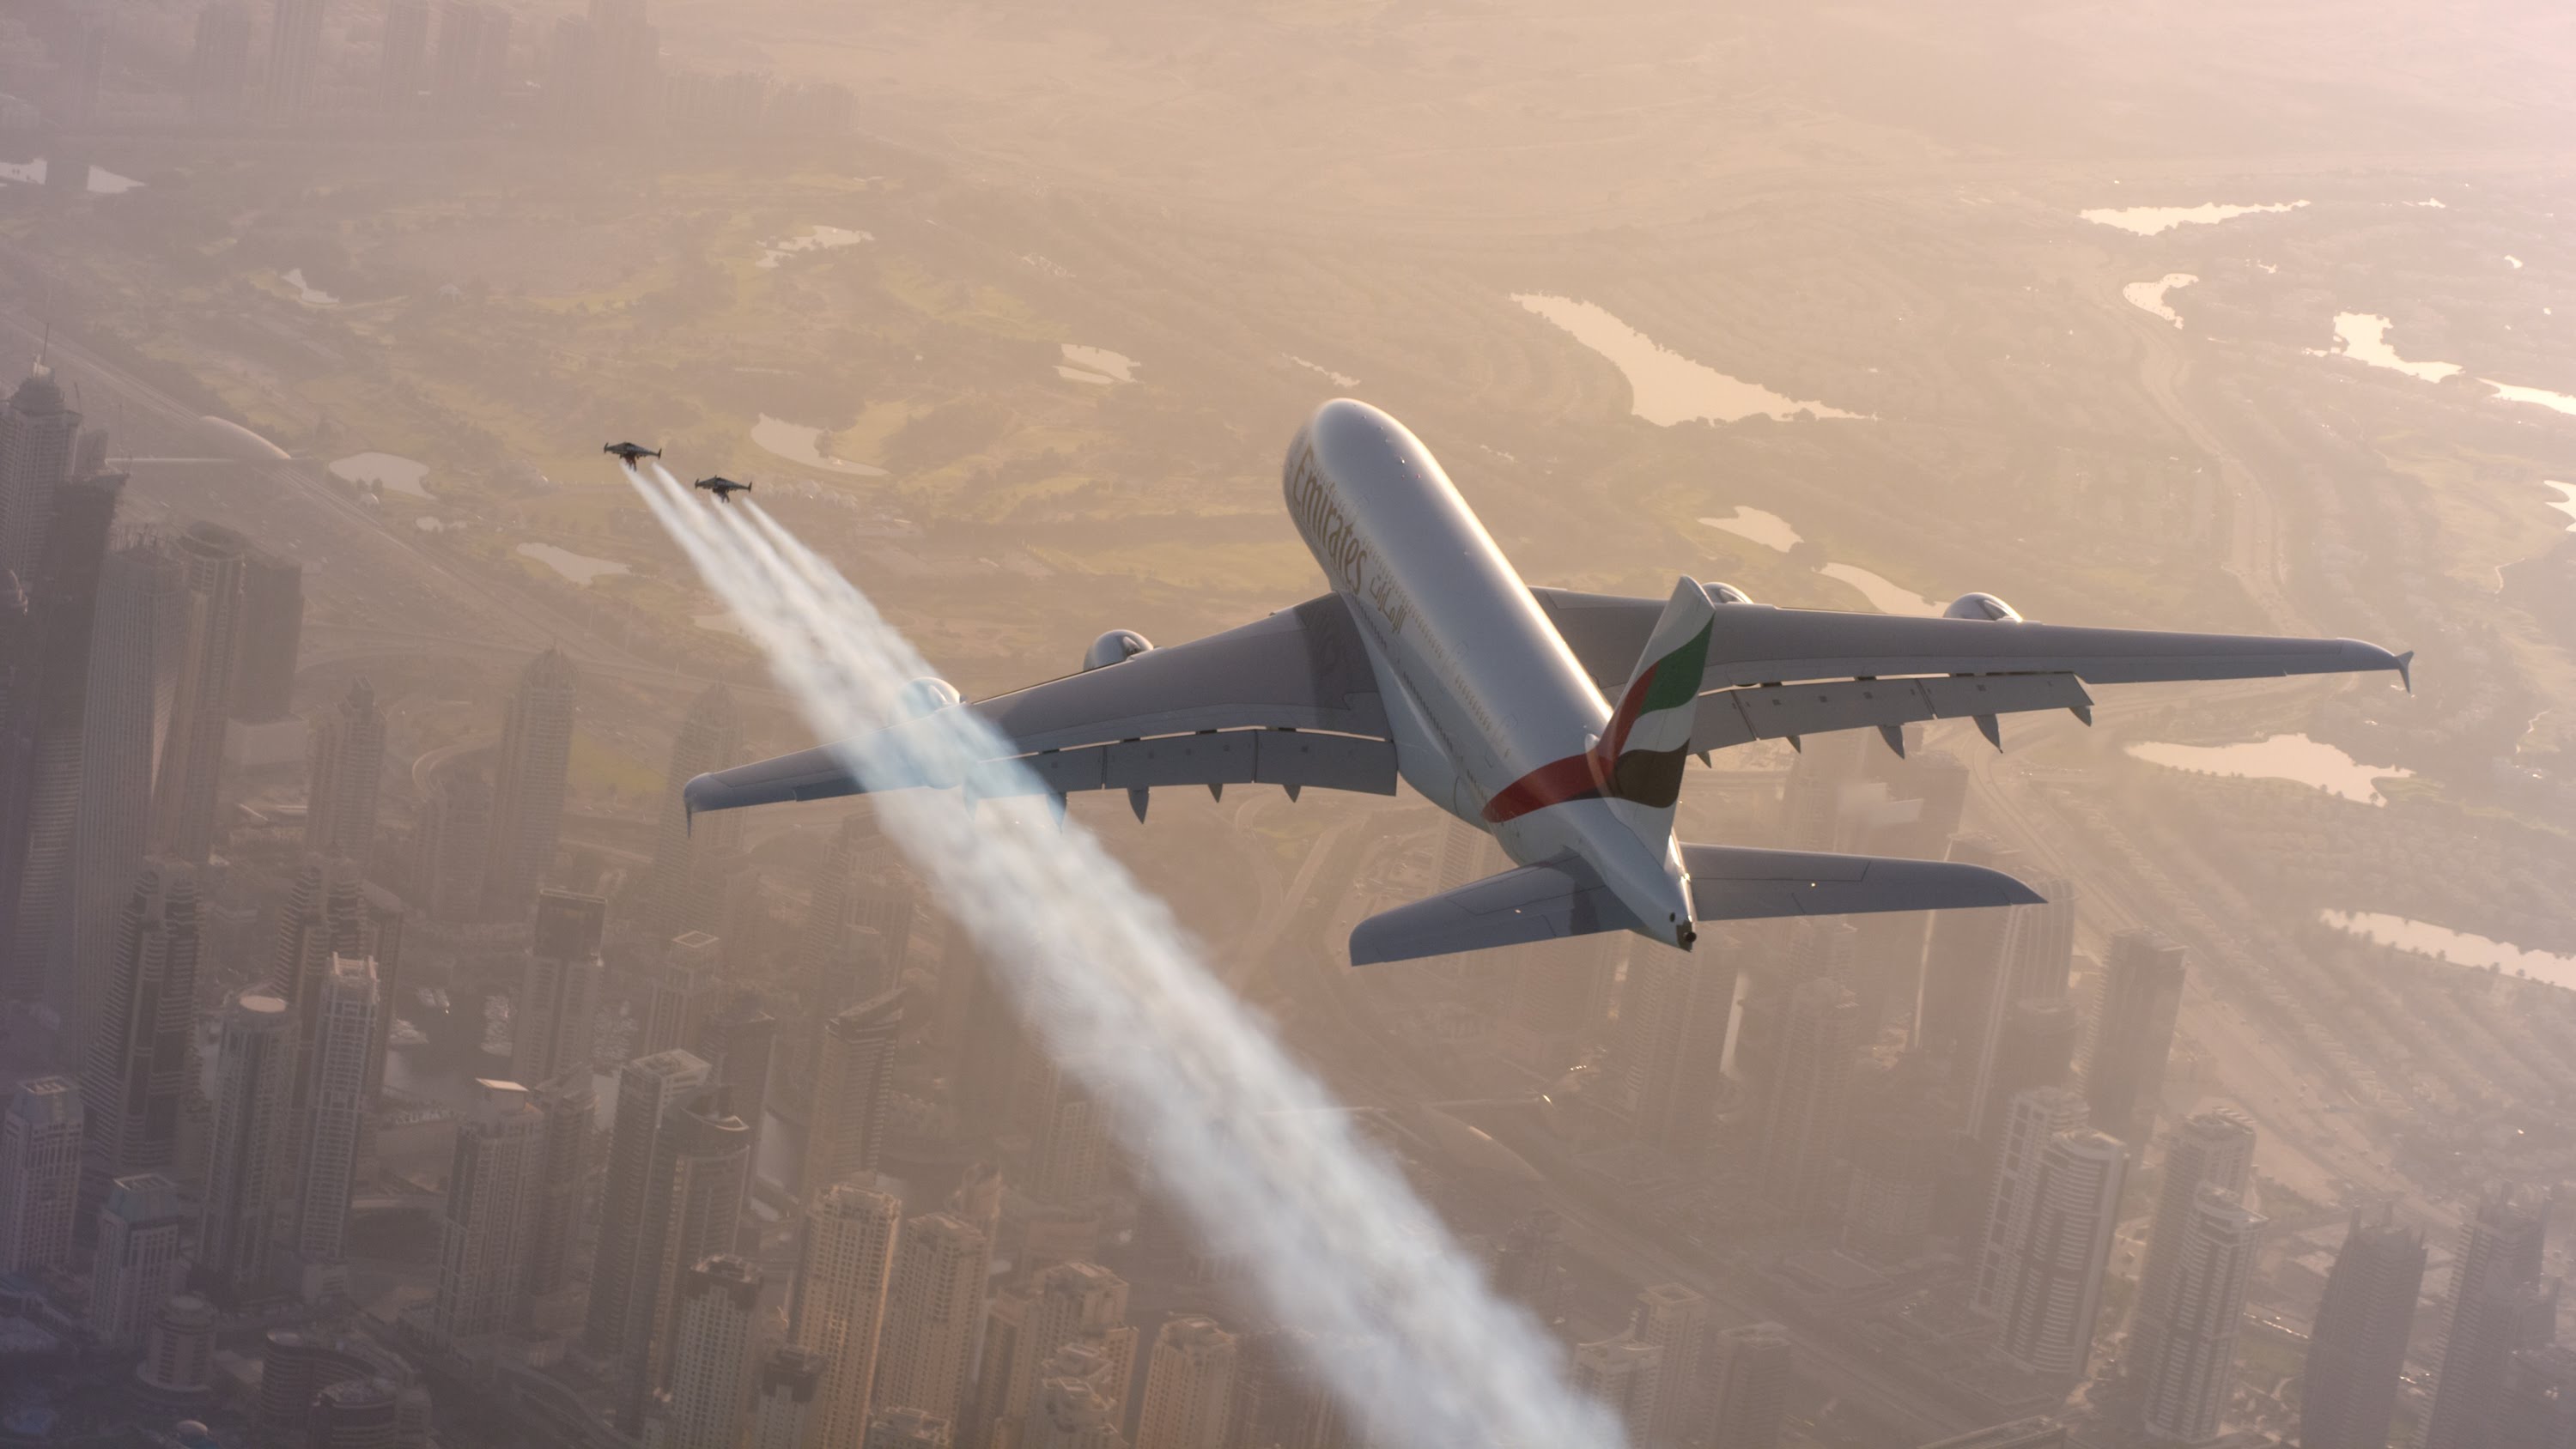 VIDEO: Ekstrēmi! 2 puiši lidinās gaisā blakus lielākajai pasaules lidmašīnai!